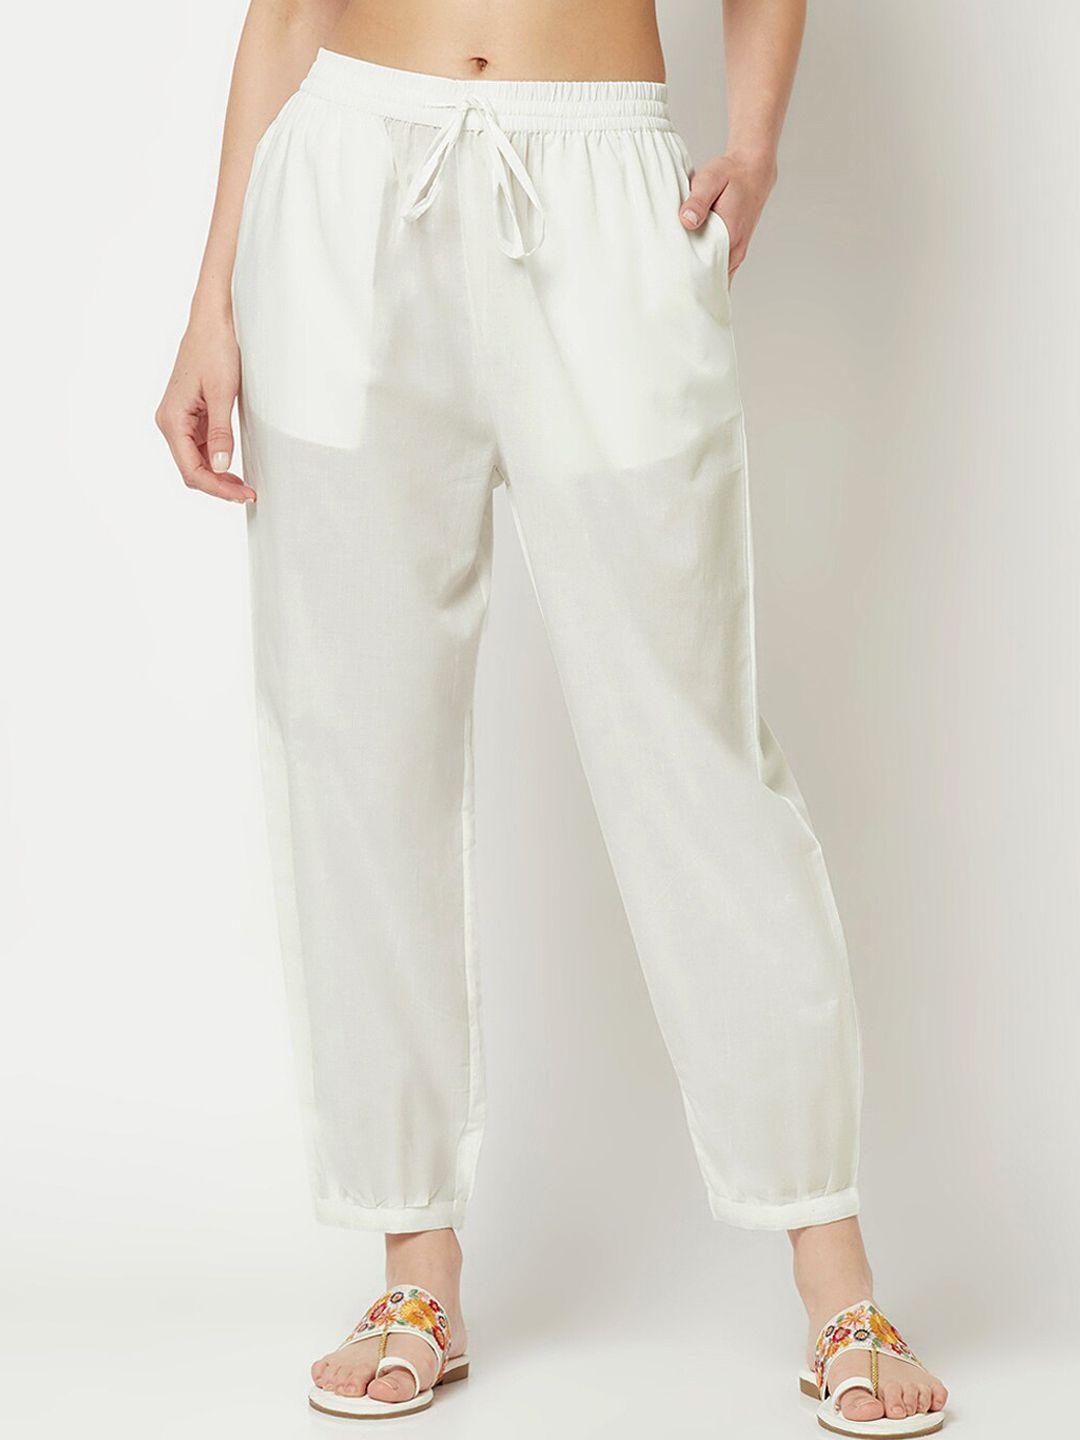 imara womens cotton regular trousers